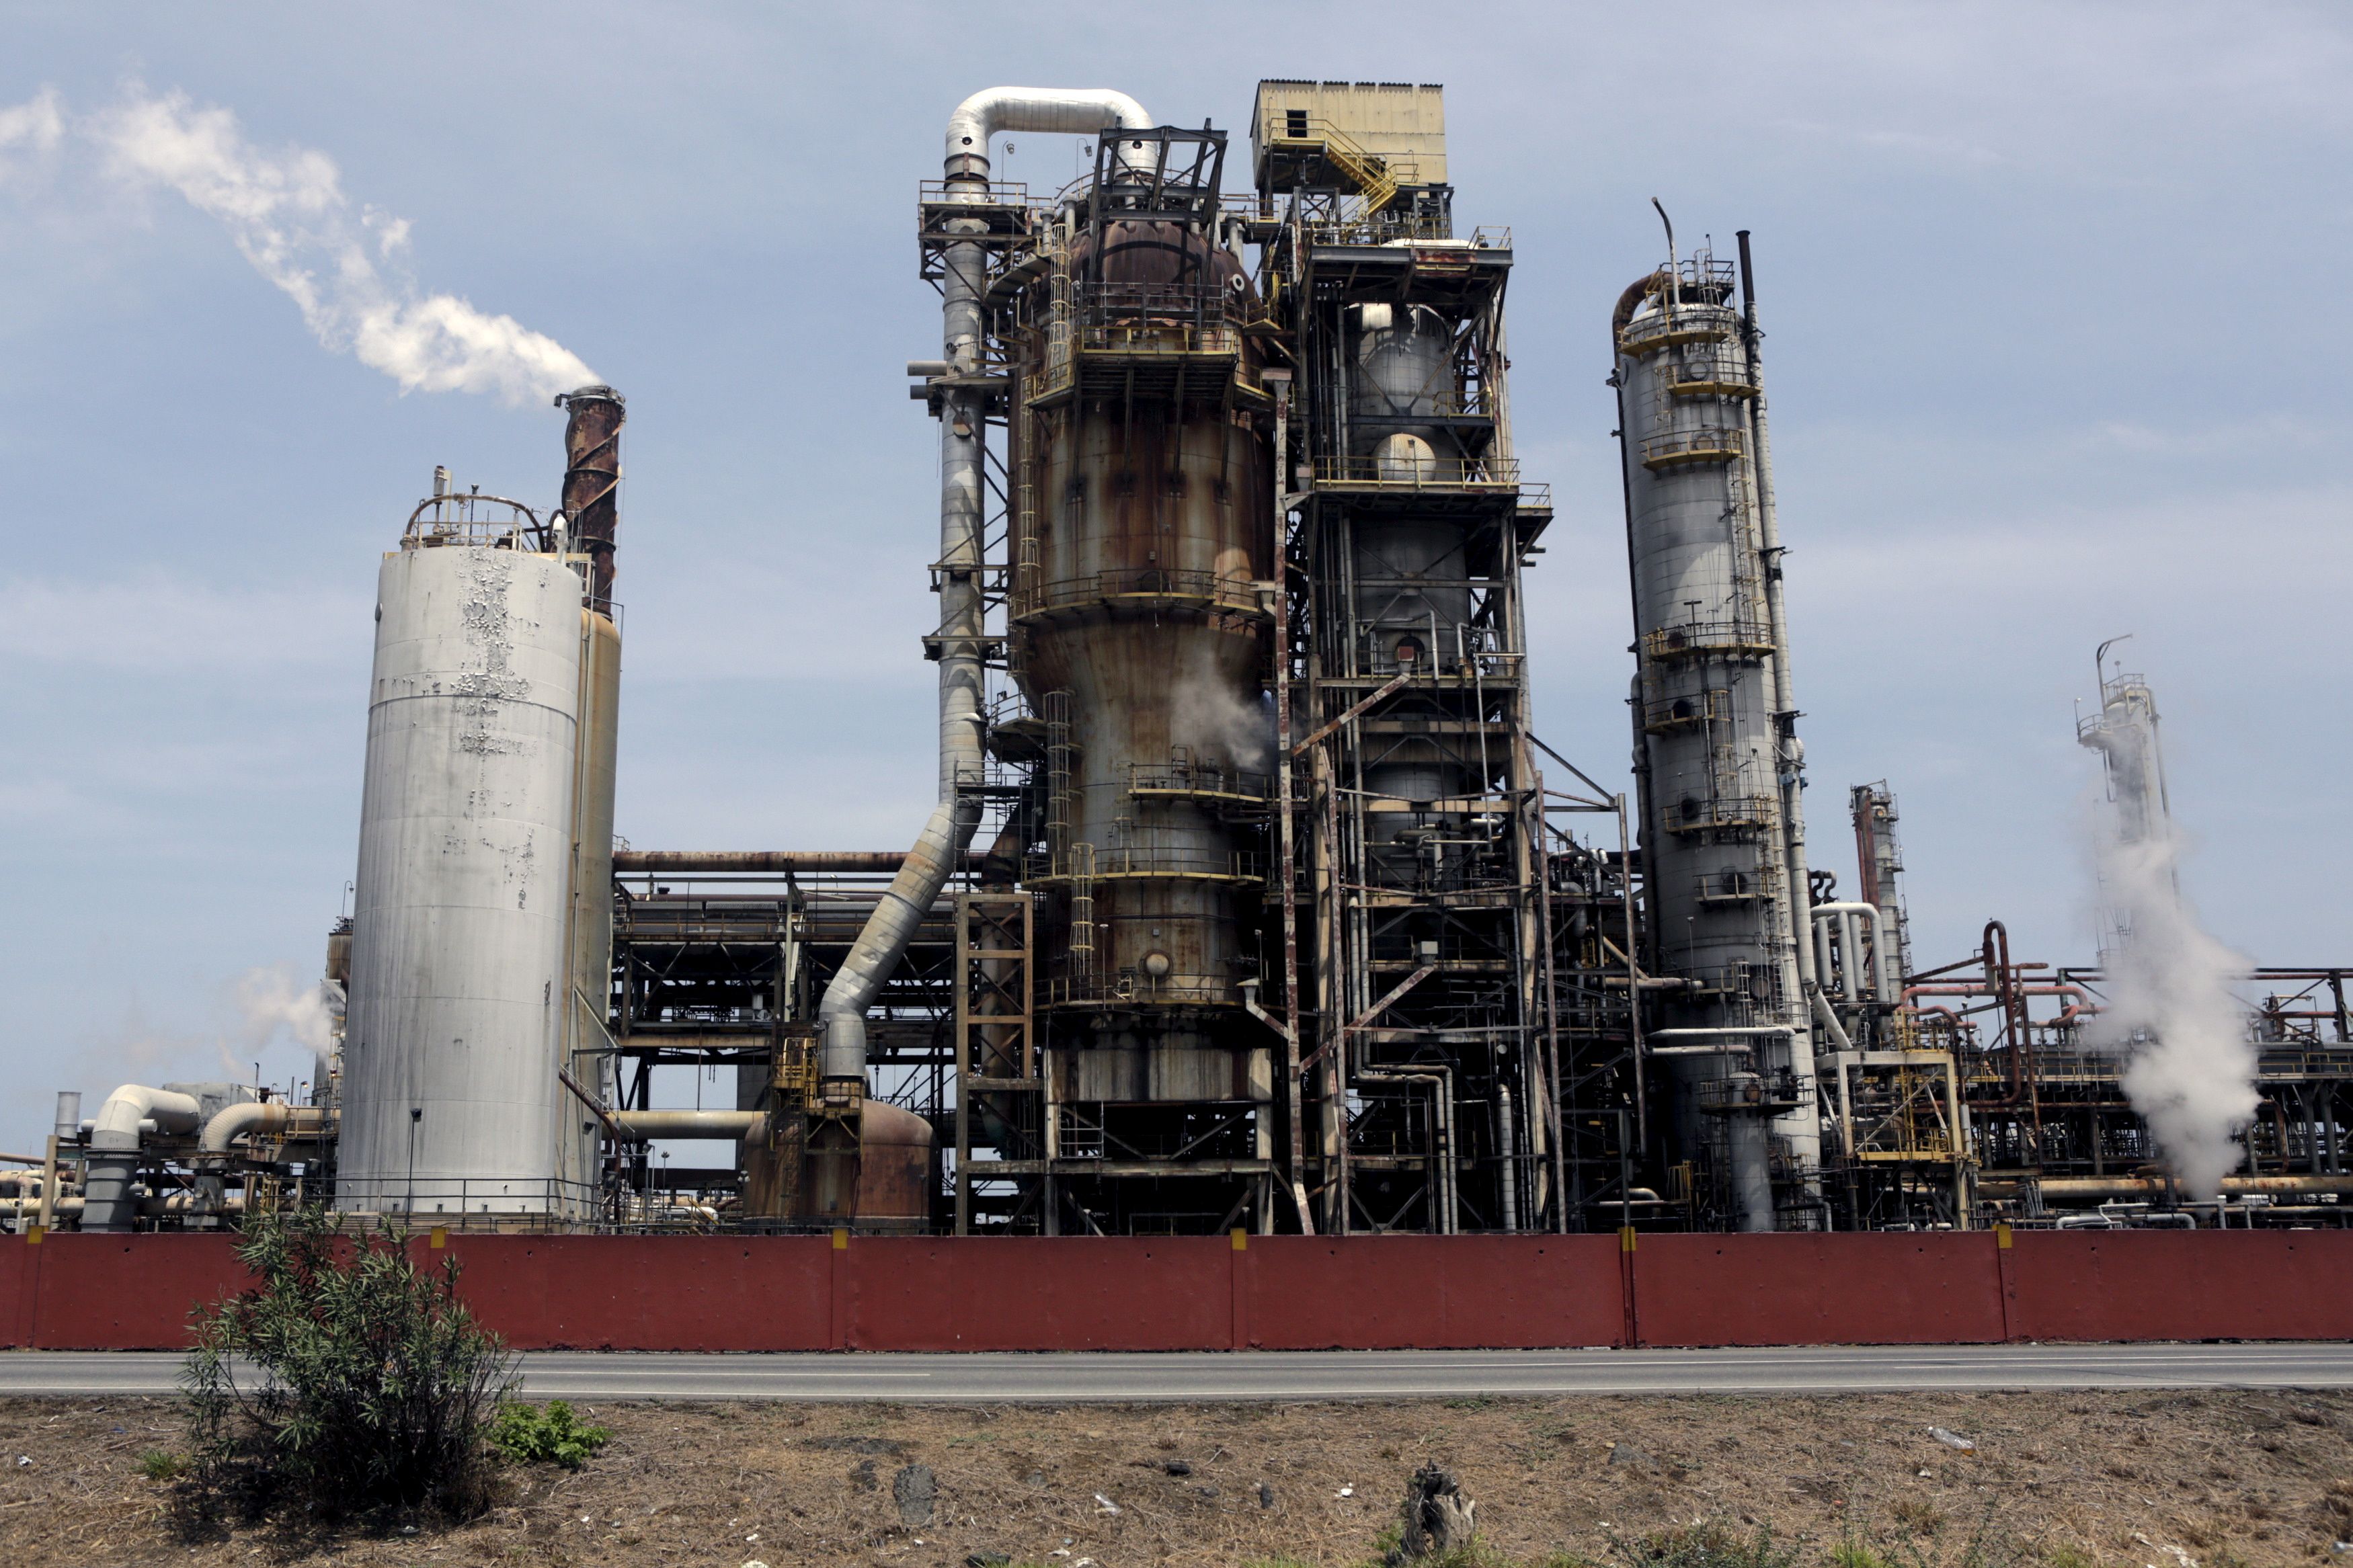 La gasolina iraní que desembarcó en la refinería El Palito no llega a 90 octanos, según trabajadores